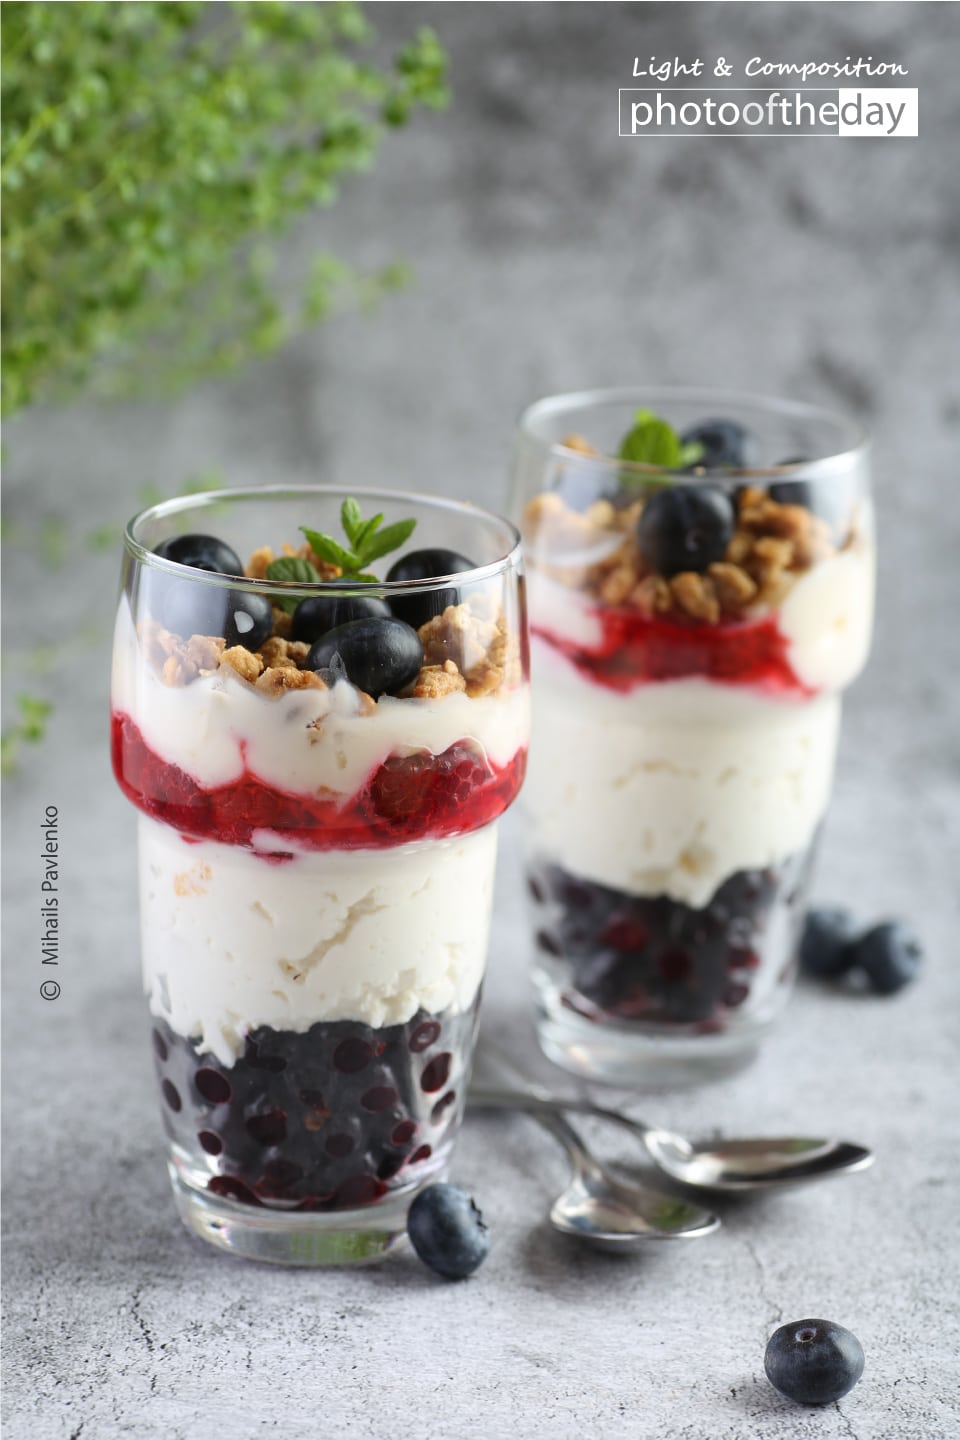 Sweet Granola Dessert with Yogurt and Berries by Mihails Pavlenko